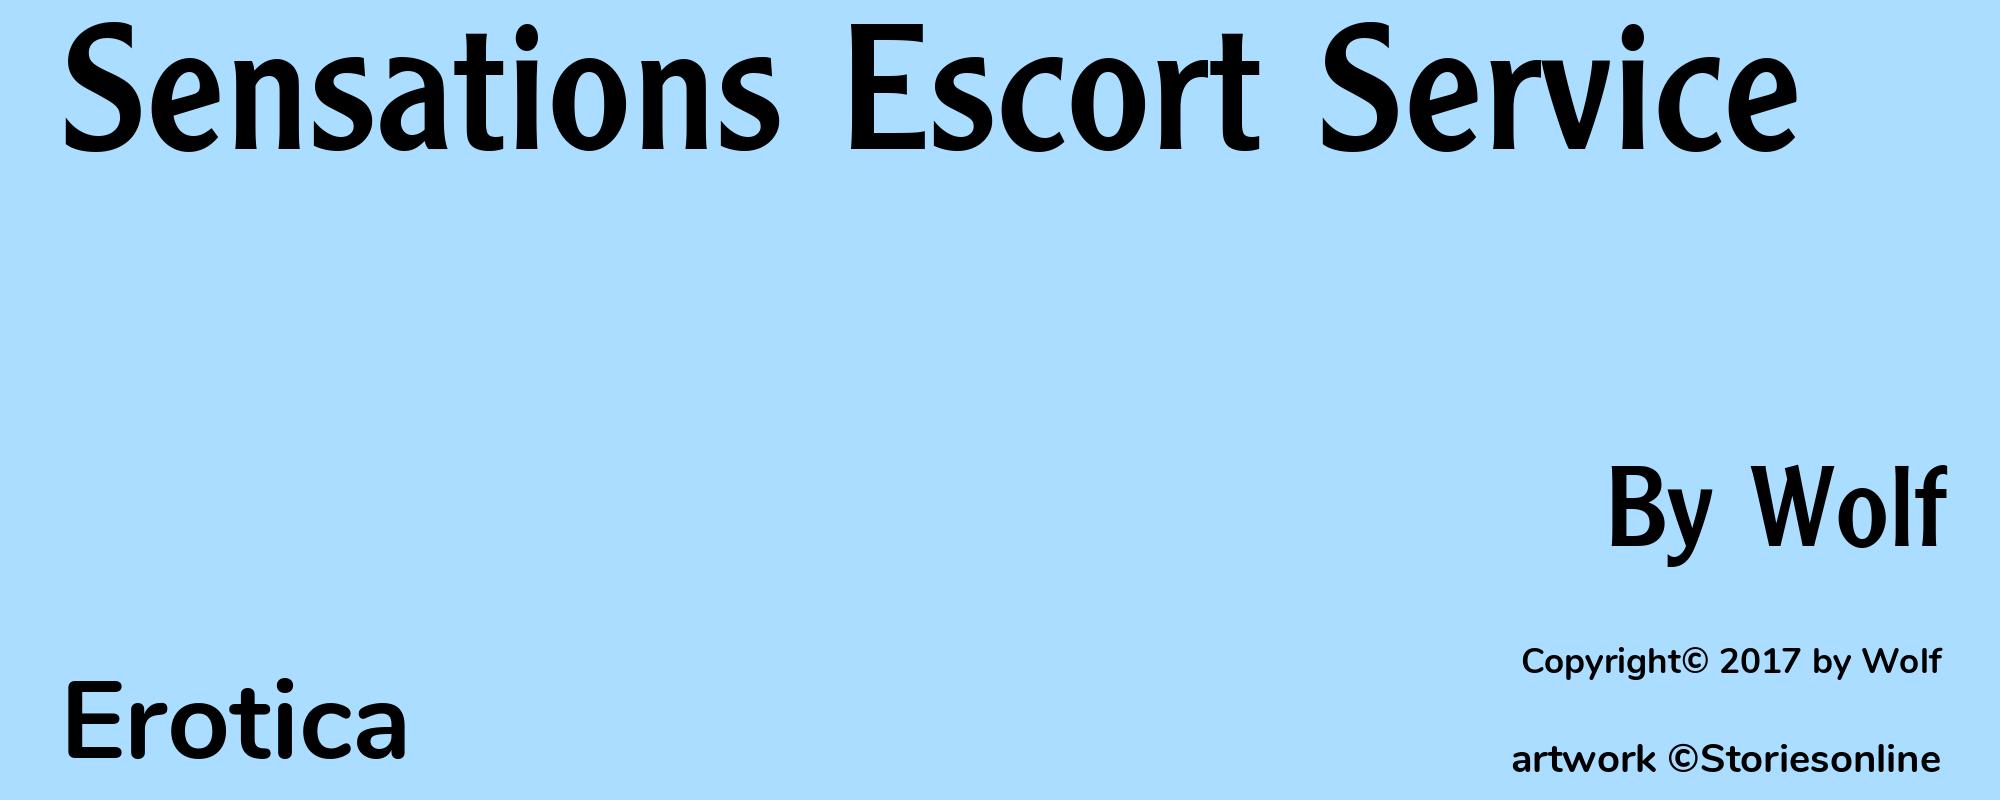 Sensations Escort Service - Cover